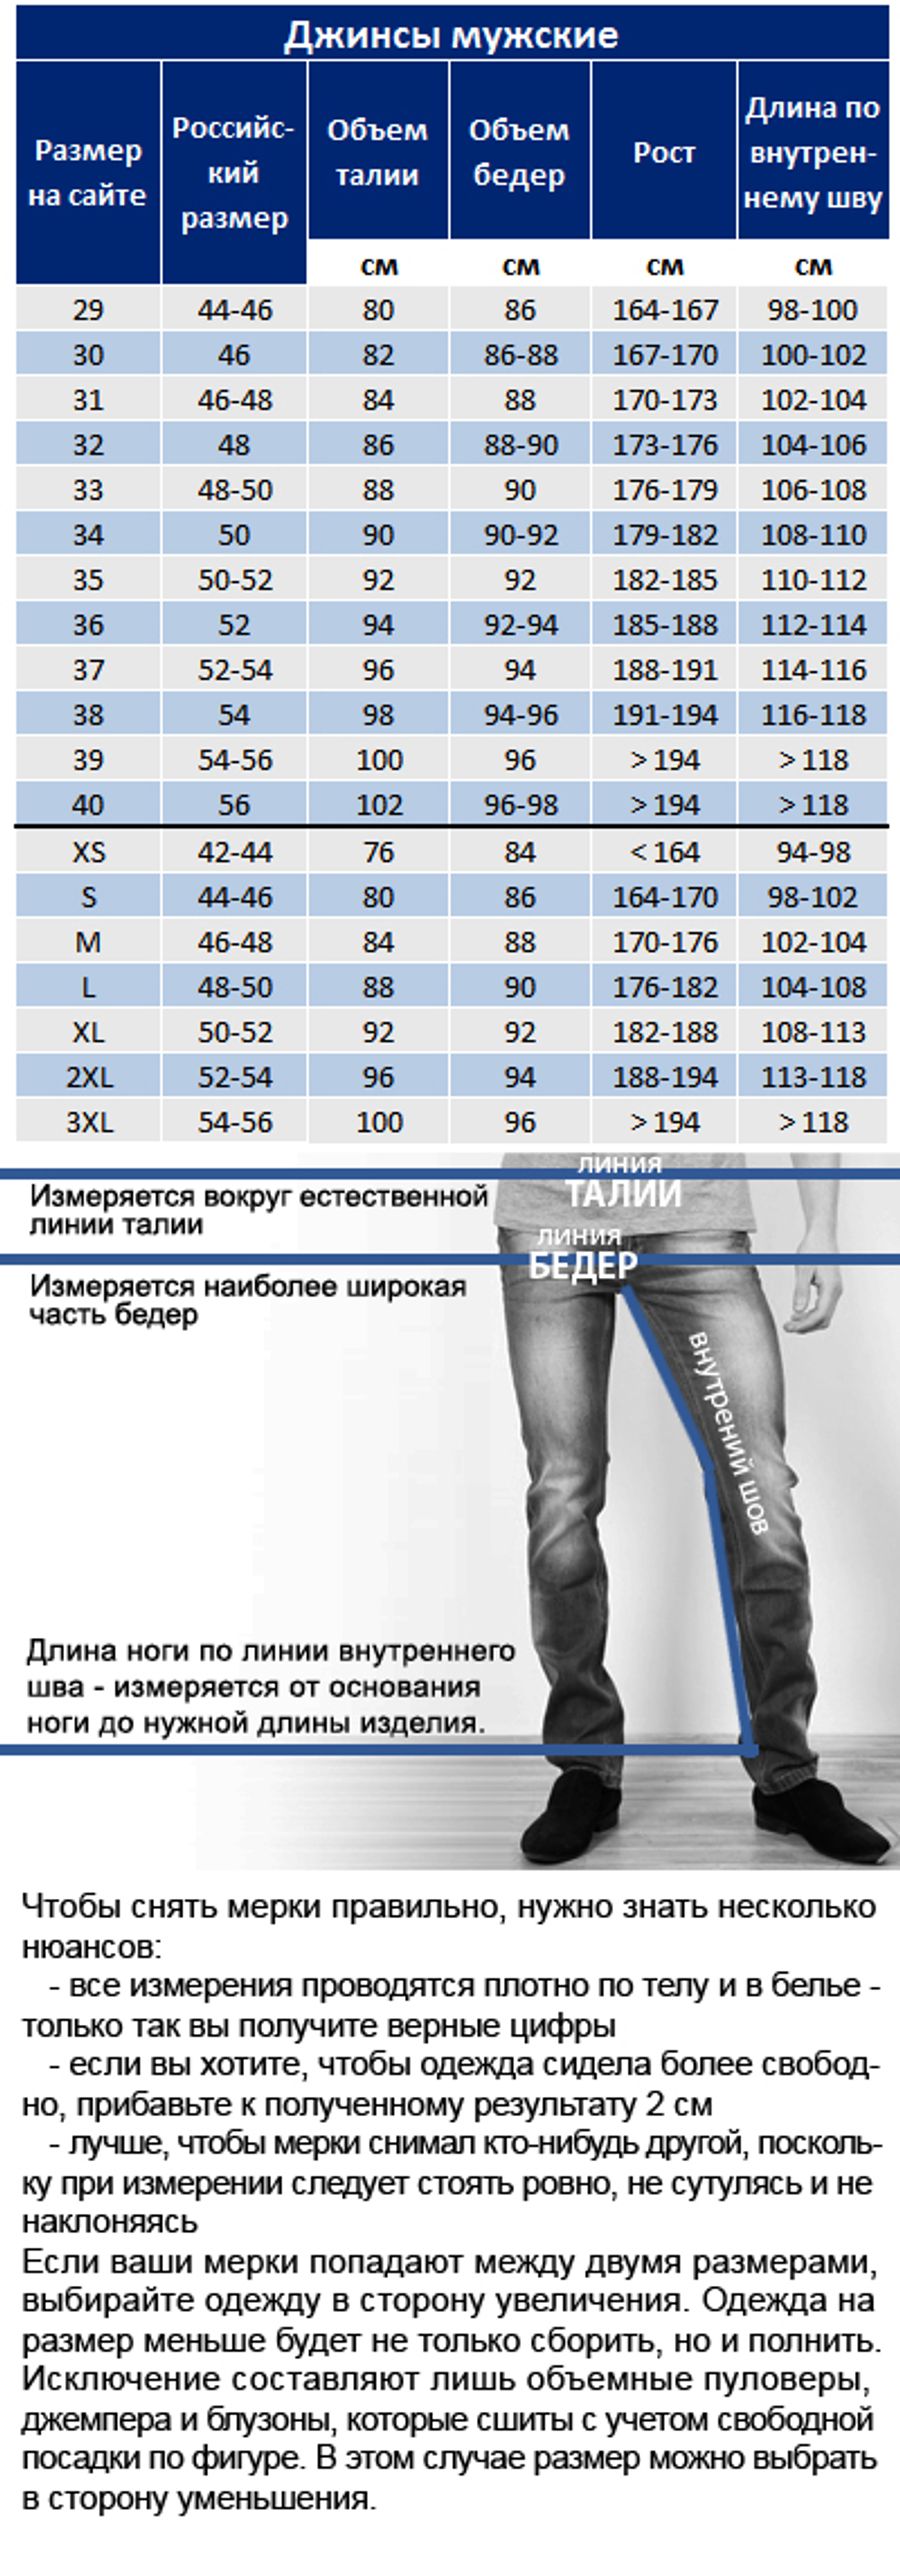 Размеры джинс мужских по росту. Размерная сетка джинсы мужские. Размеры джинс мужских. Джинсы мужские Размеры. Размер джинс таблица для мужчин.